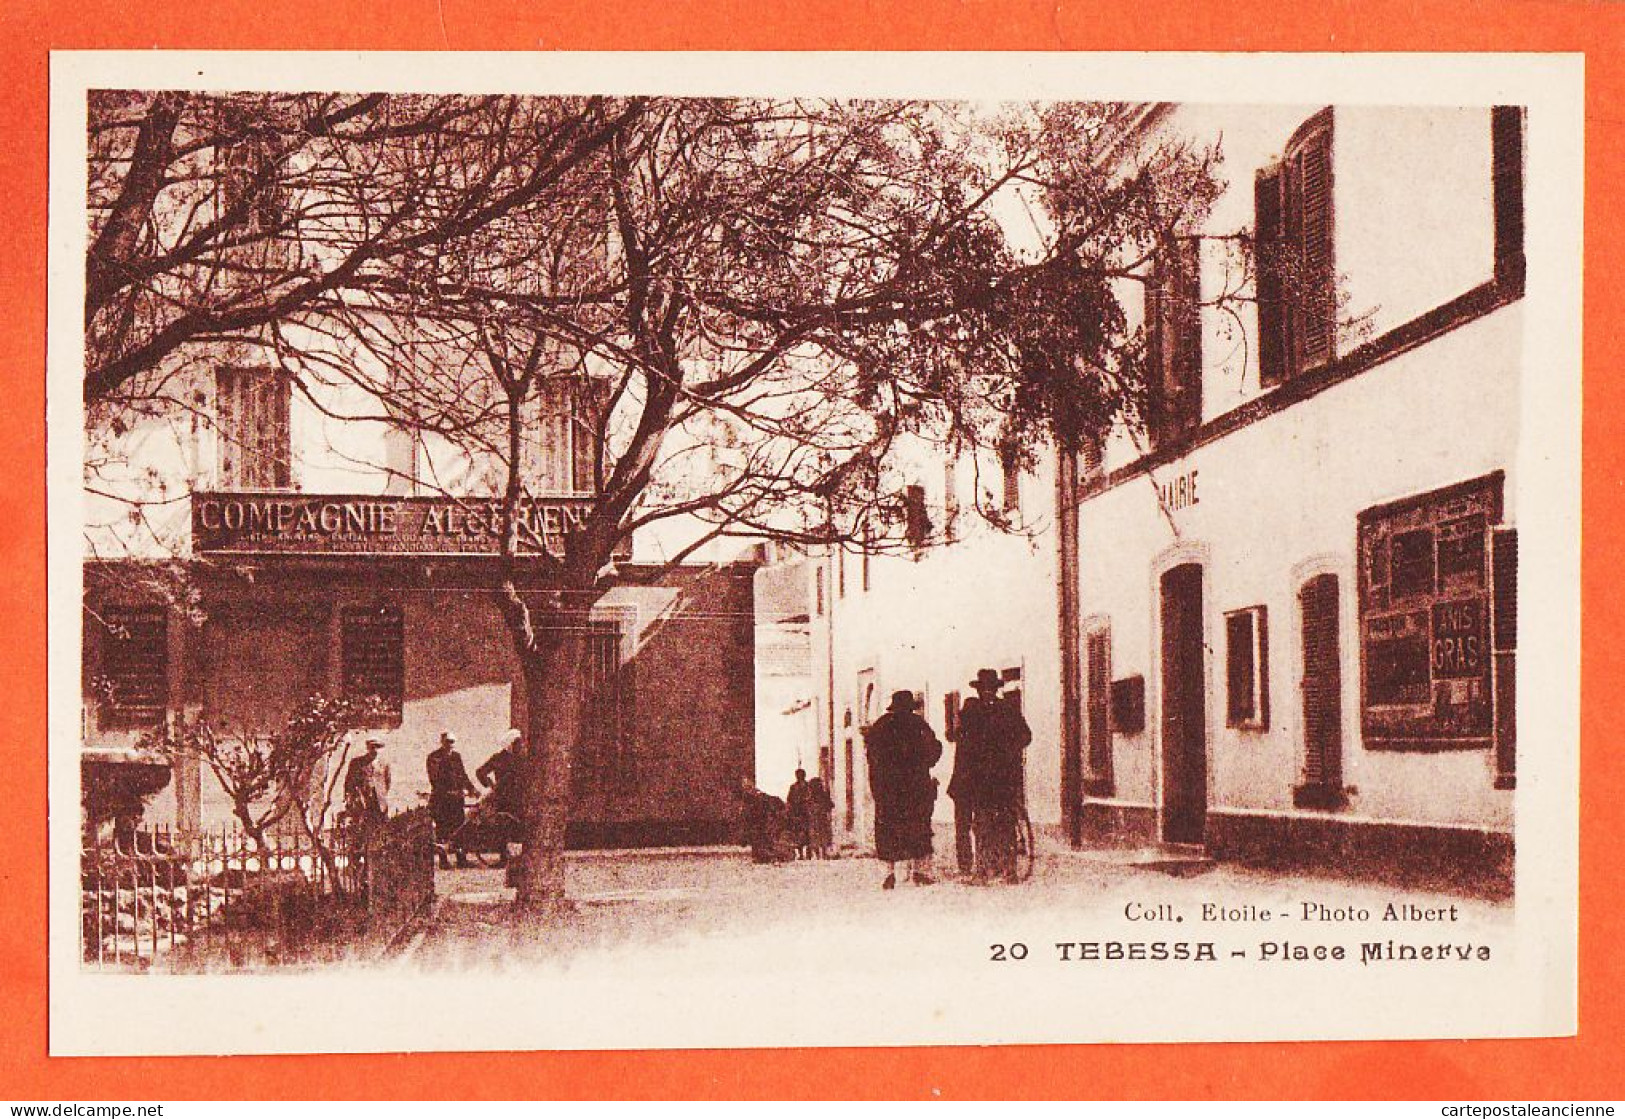 01746 / TEBESSA Algérie Compagnie Algérienne Mairie Place MINERVE 1920s Collection ETOILE Photo ALBERT - Tebessa